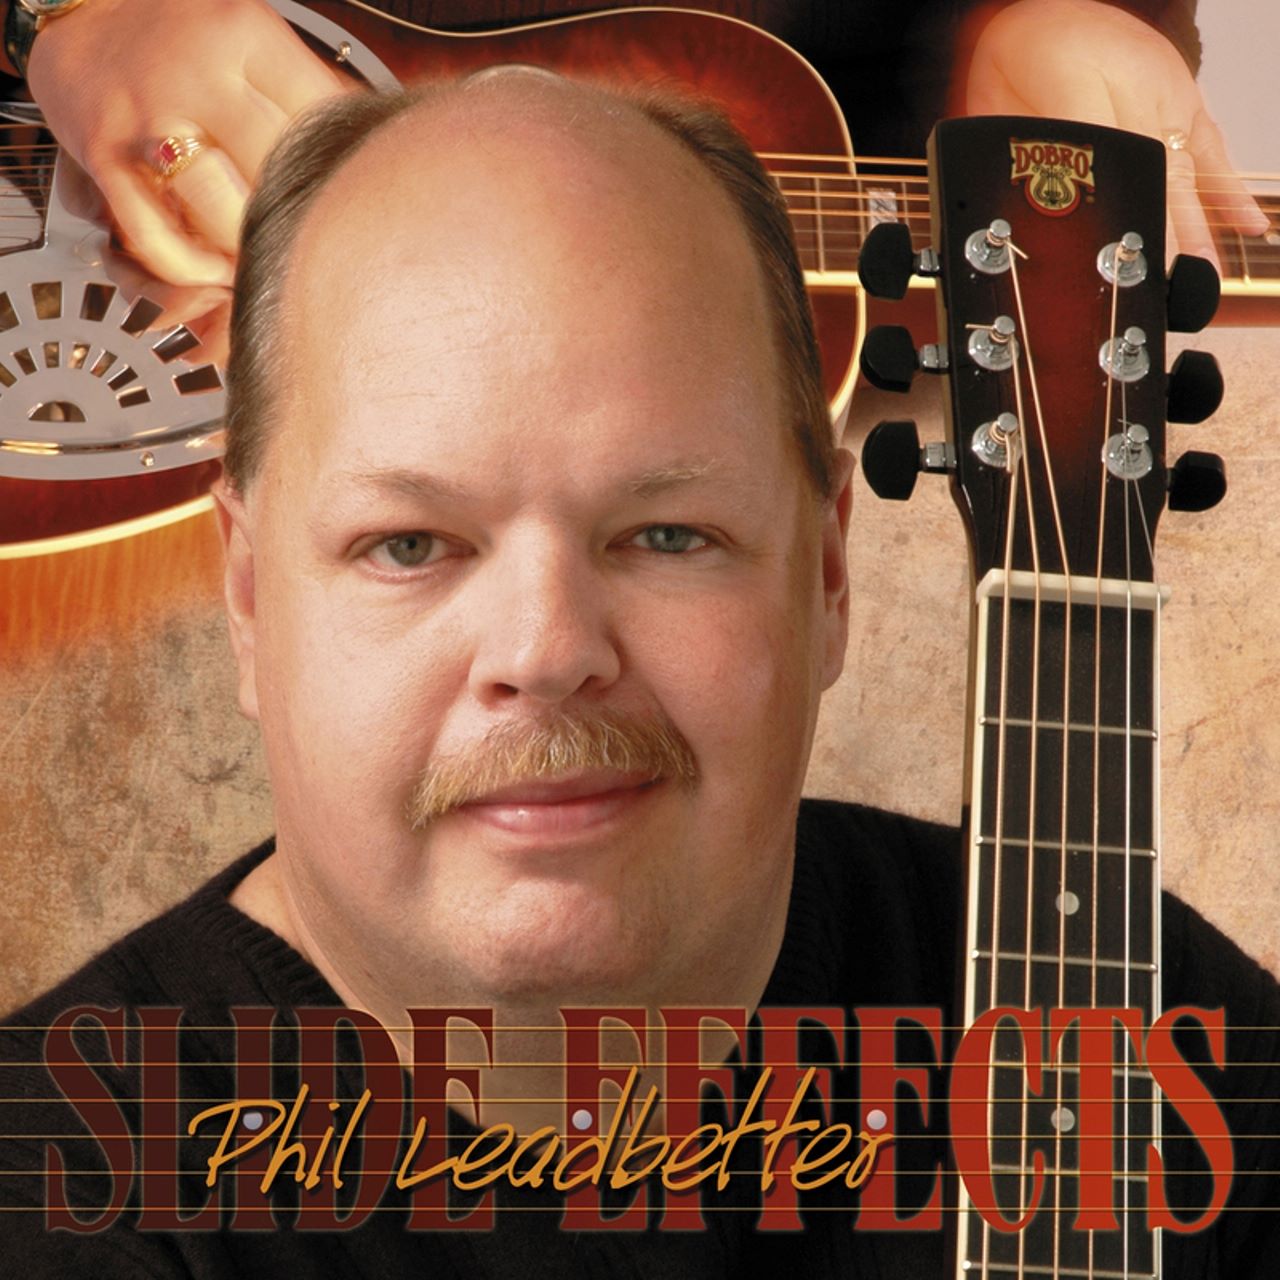 Phil Leadbetter - Slide Effects cover album